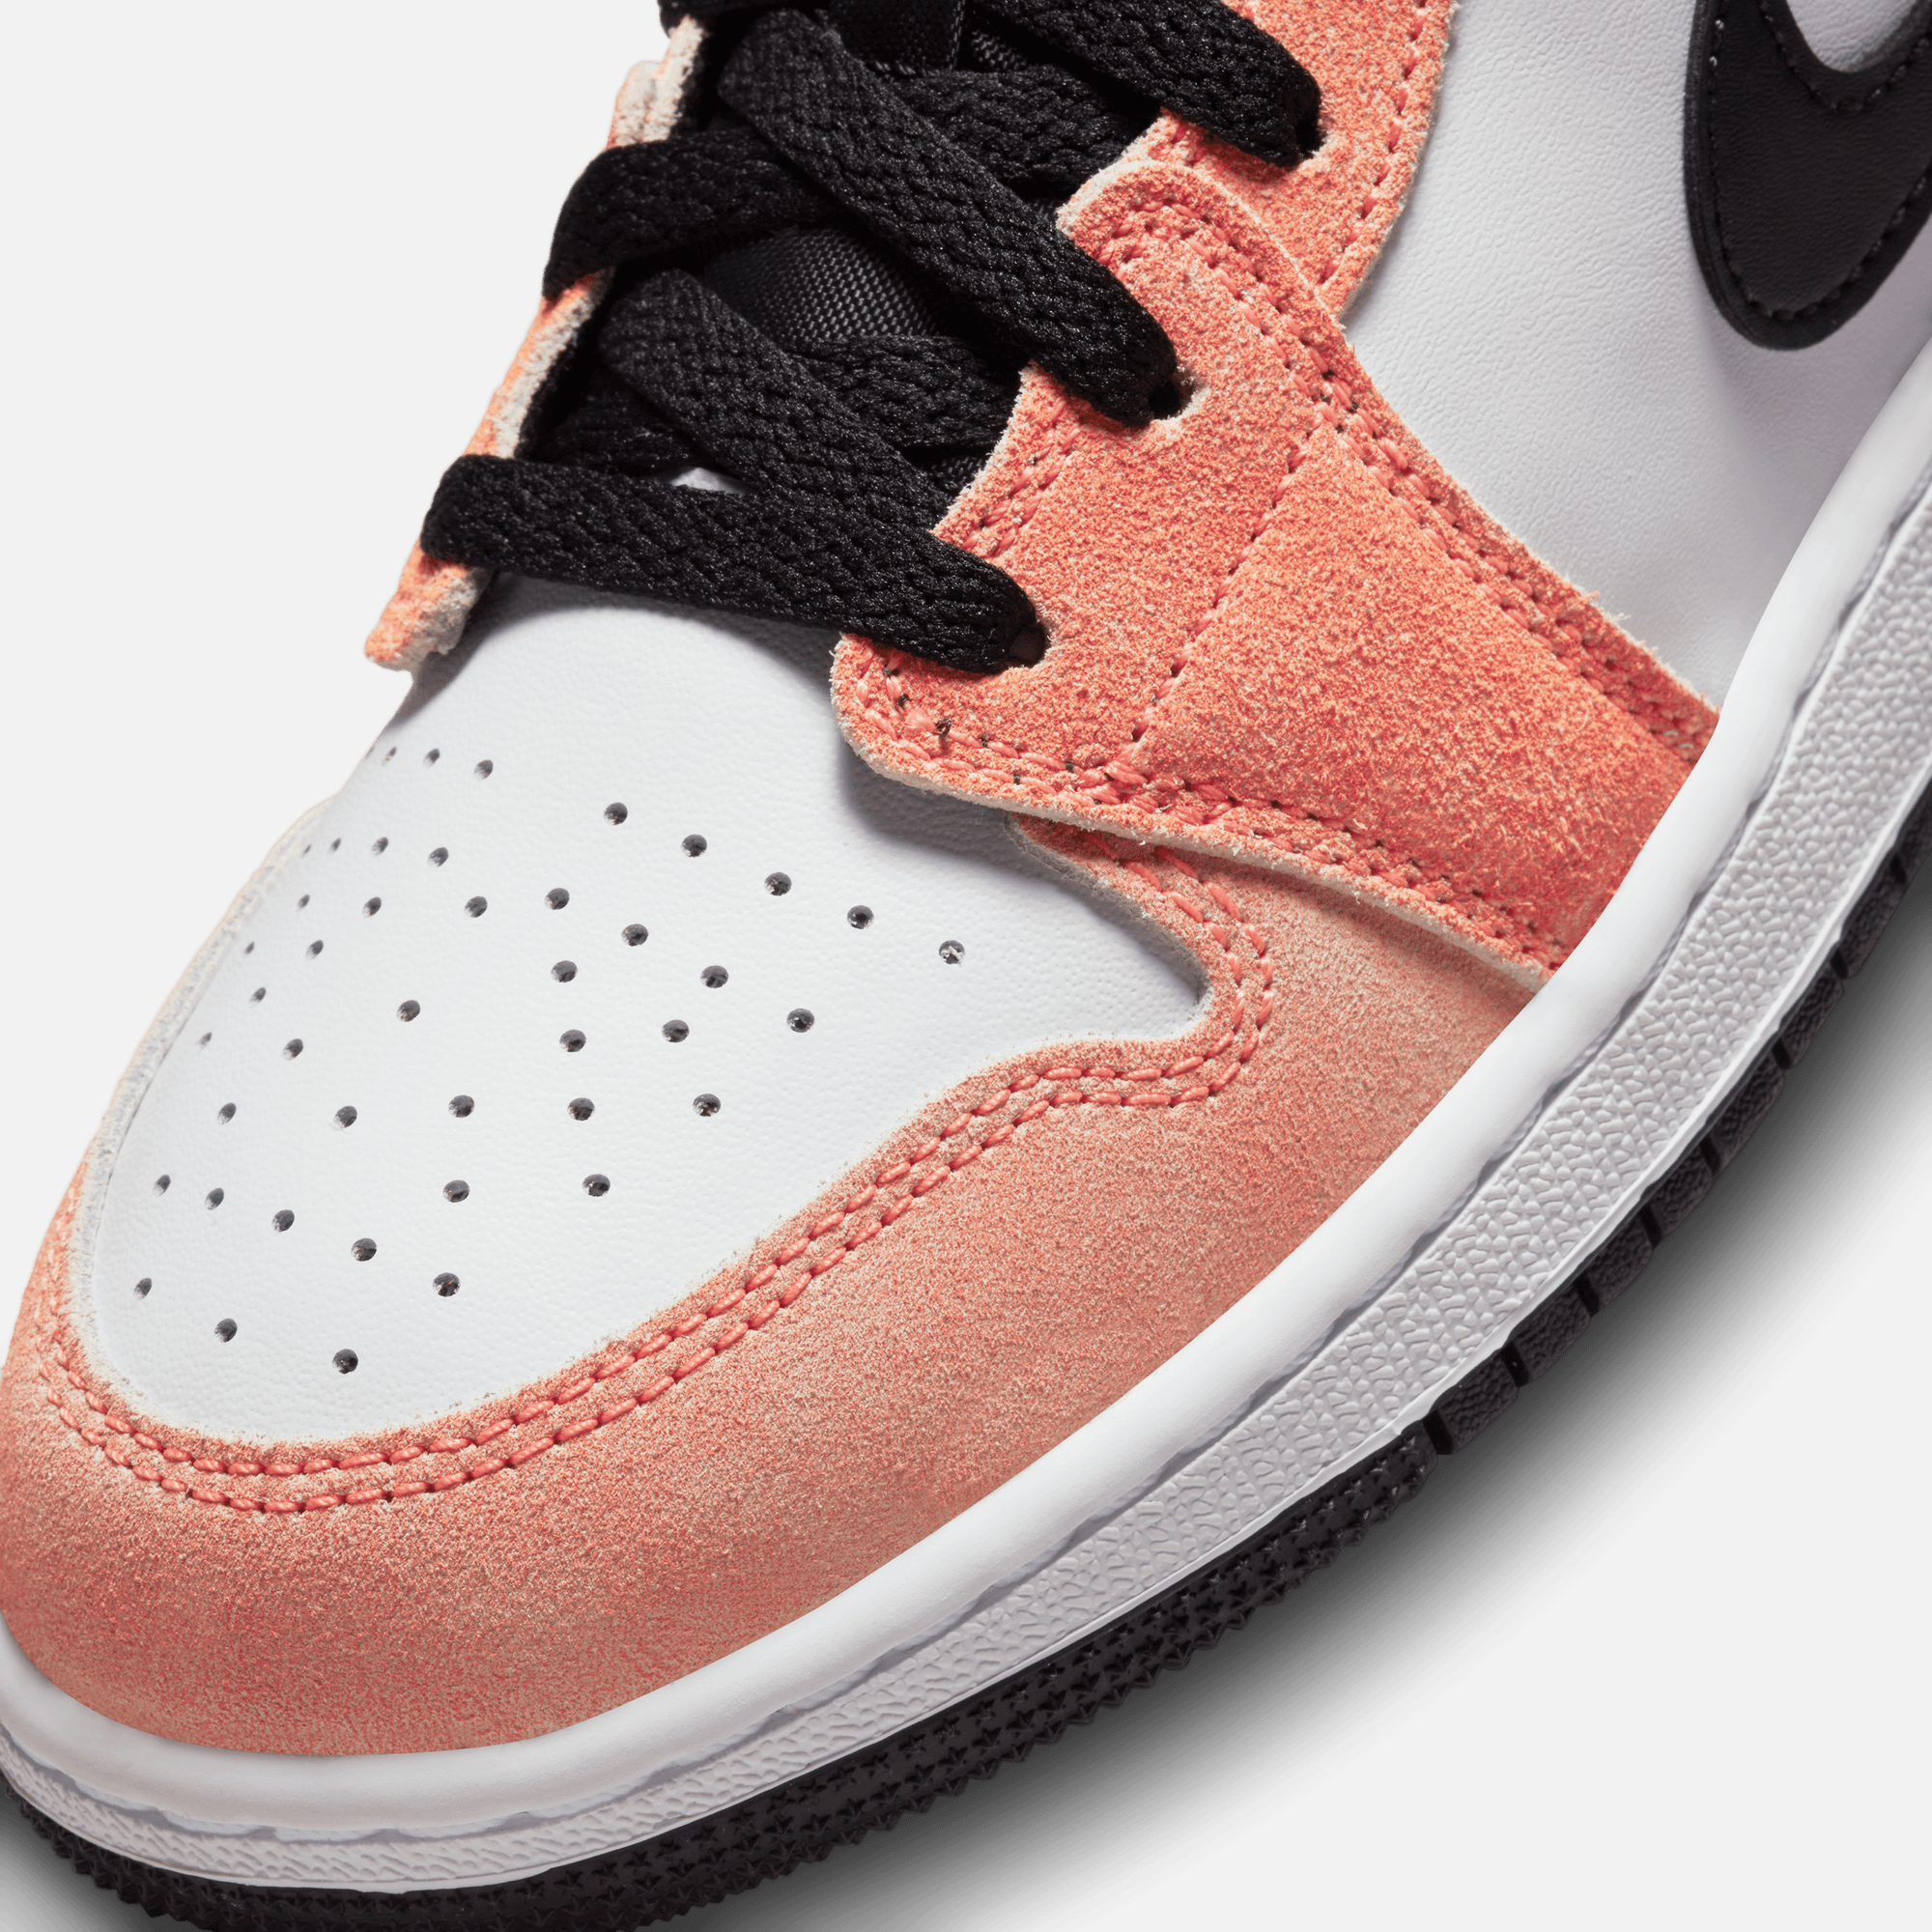 Air Jordan 1: Nike Air Jordan 1 Low “Flight Club” shoes: Where to buy and  more details